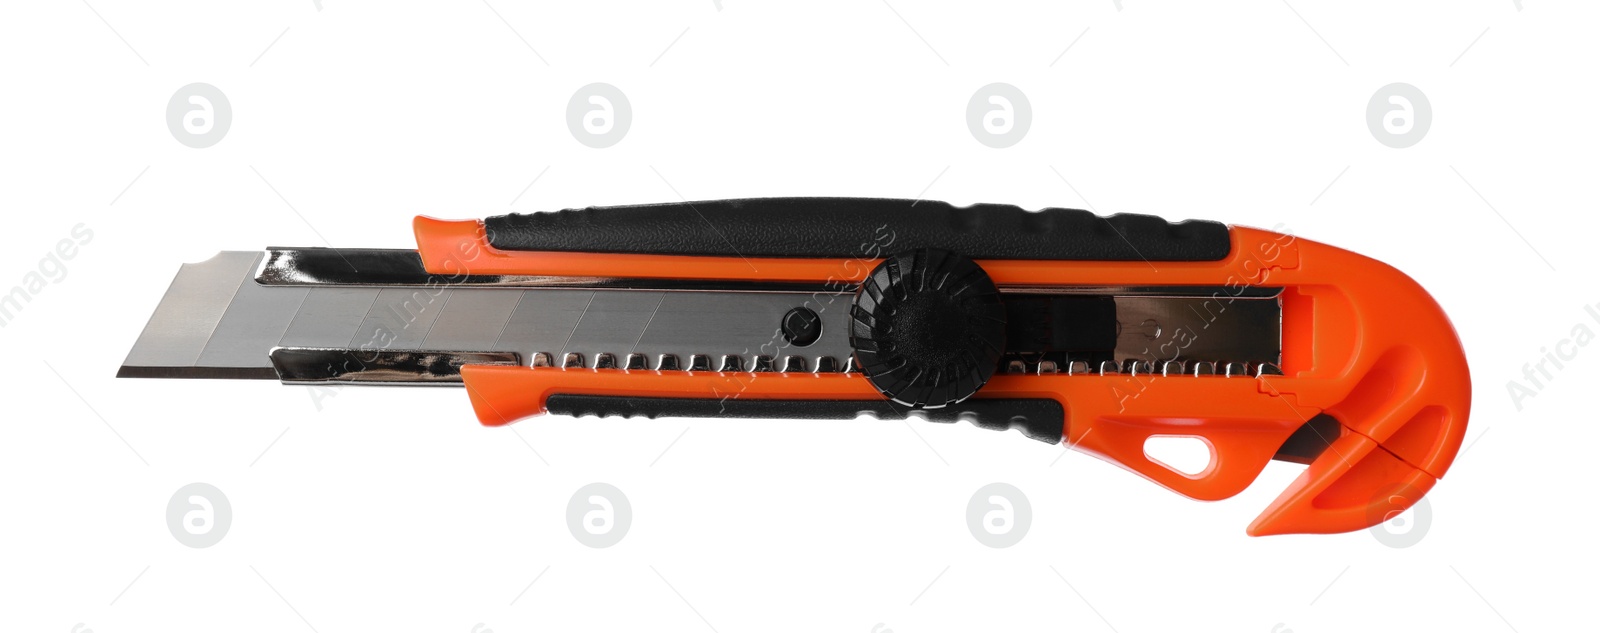 Photo of Orange utility knife isolated on white. Construction tool